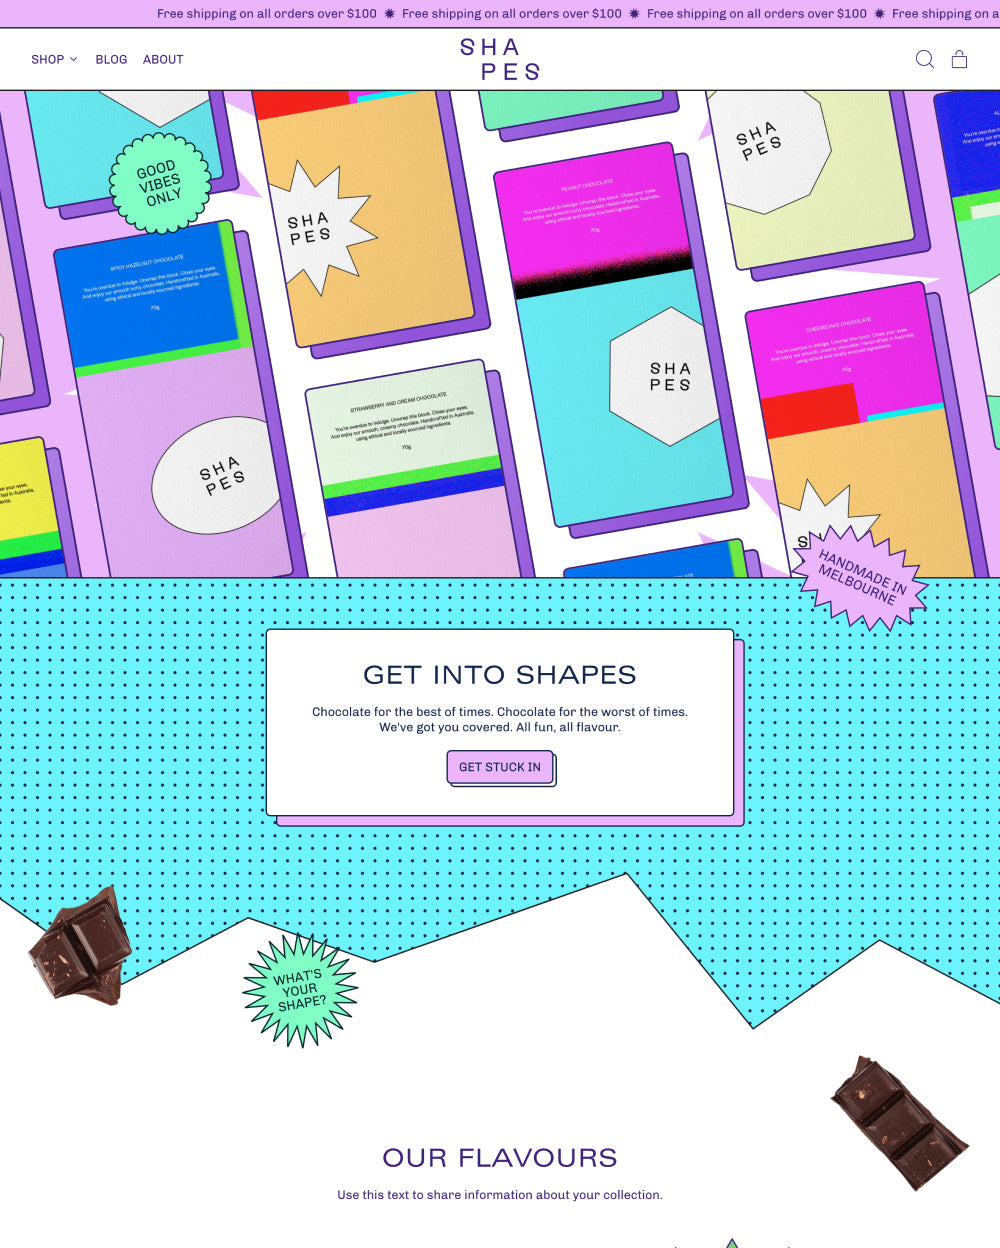 Anteprima in versione desktop del tema Shapes nello stile “Pastel”